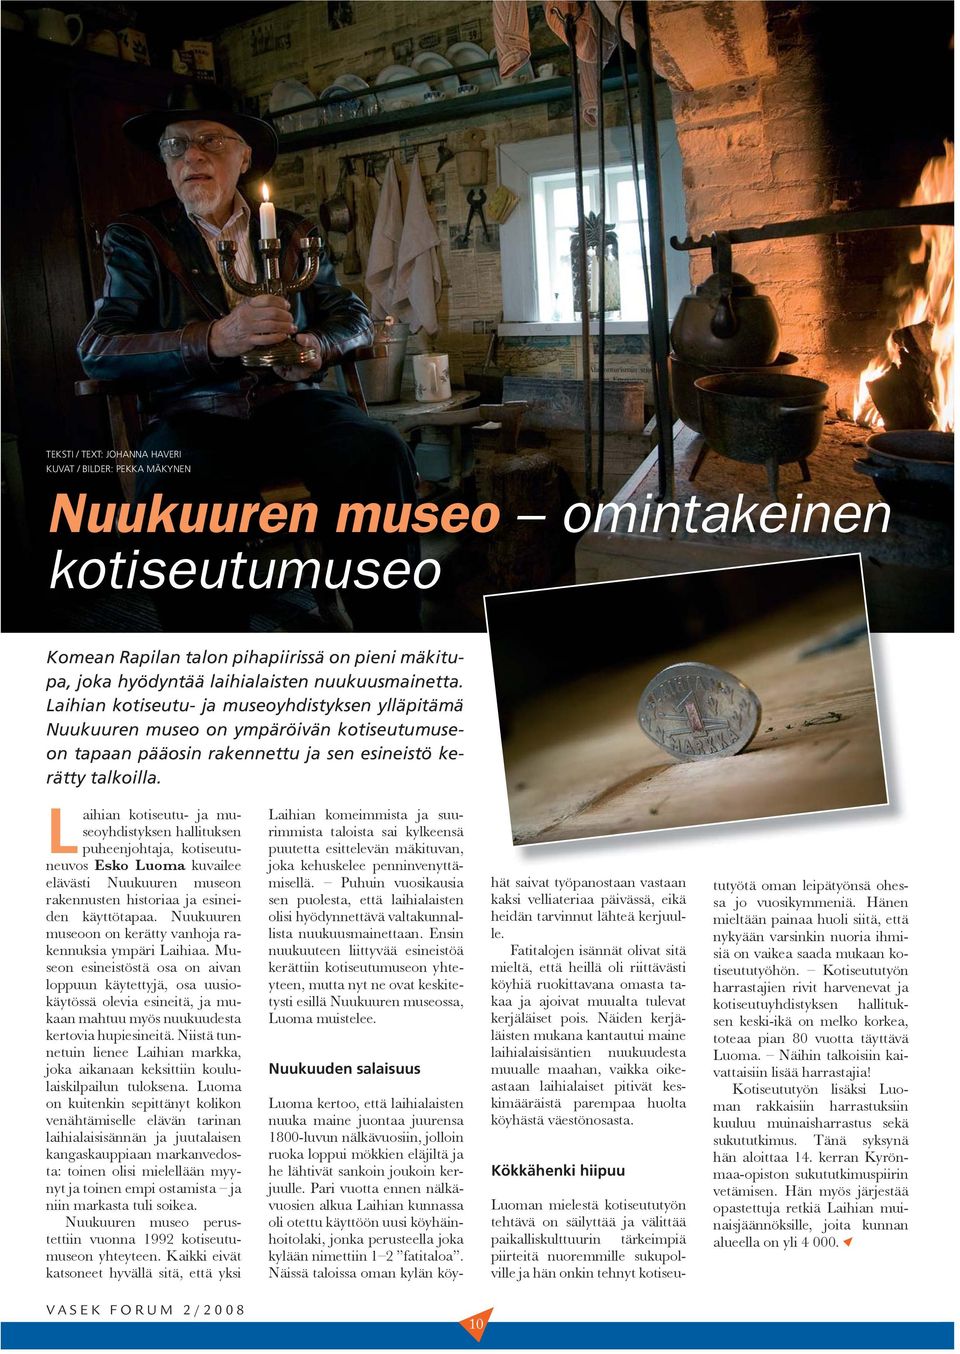 Laihian kotiseutu- ja museoyhdistyksen hallituksen puheenjohtaja, kotiseutuneuvos Esko Luoma kuvailee elävästi Nuukuuren museon rakennusten historiaa ja esineiden käyttötapaa.